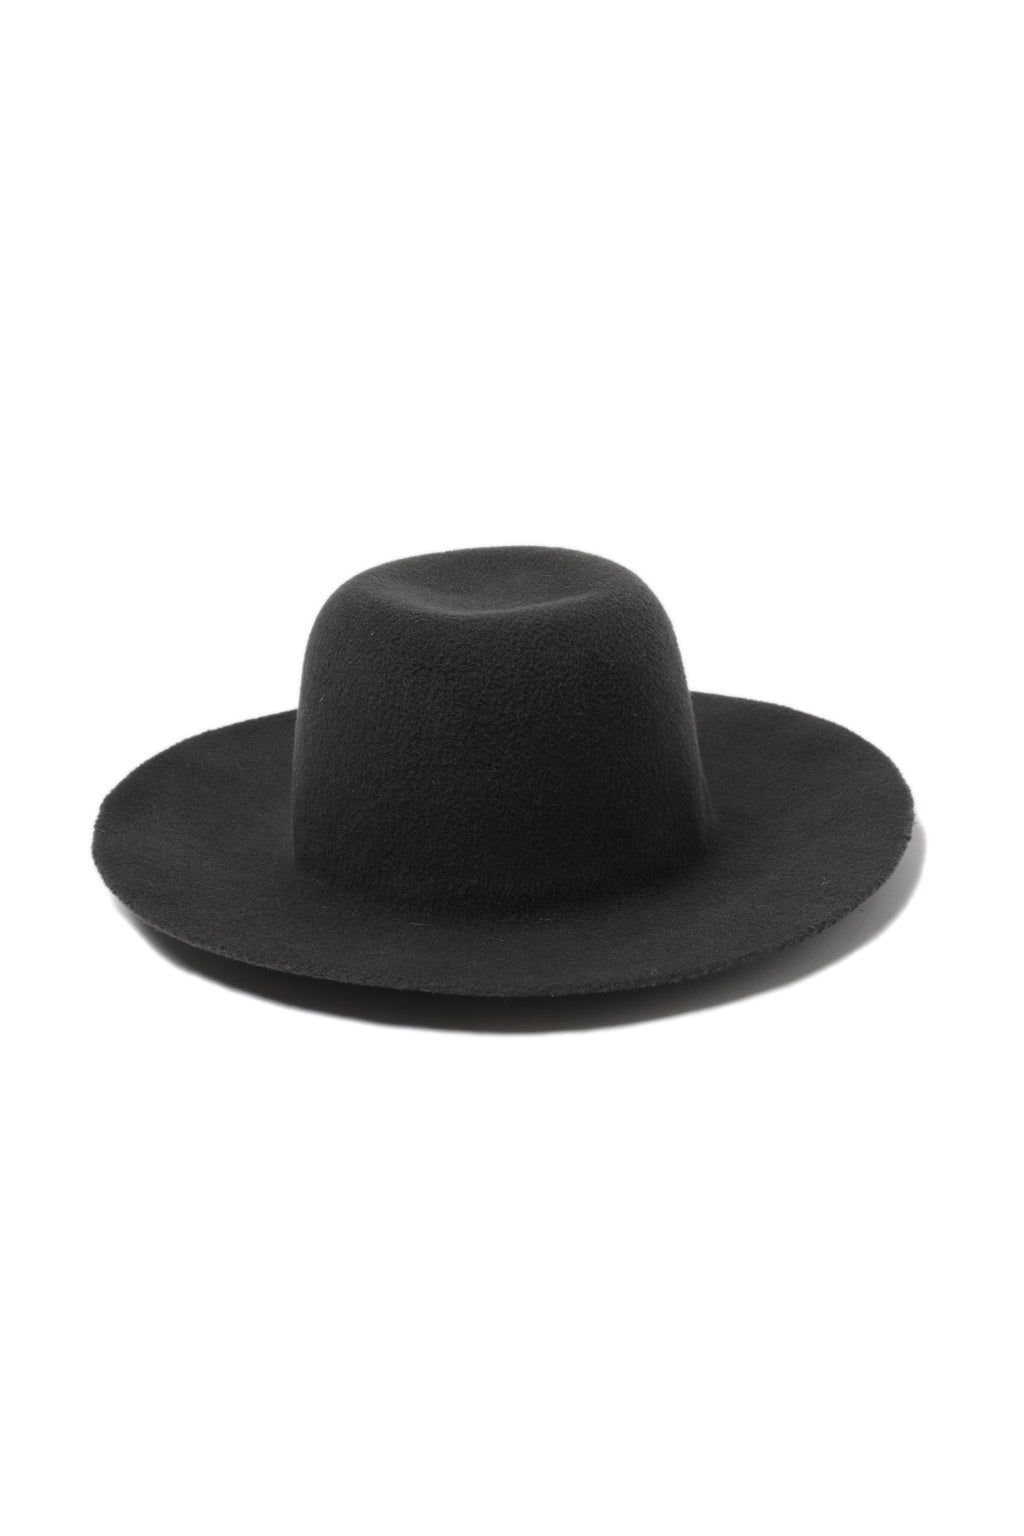 REINHARD PLANK 帽子 - 黑色